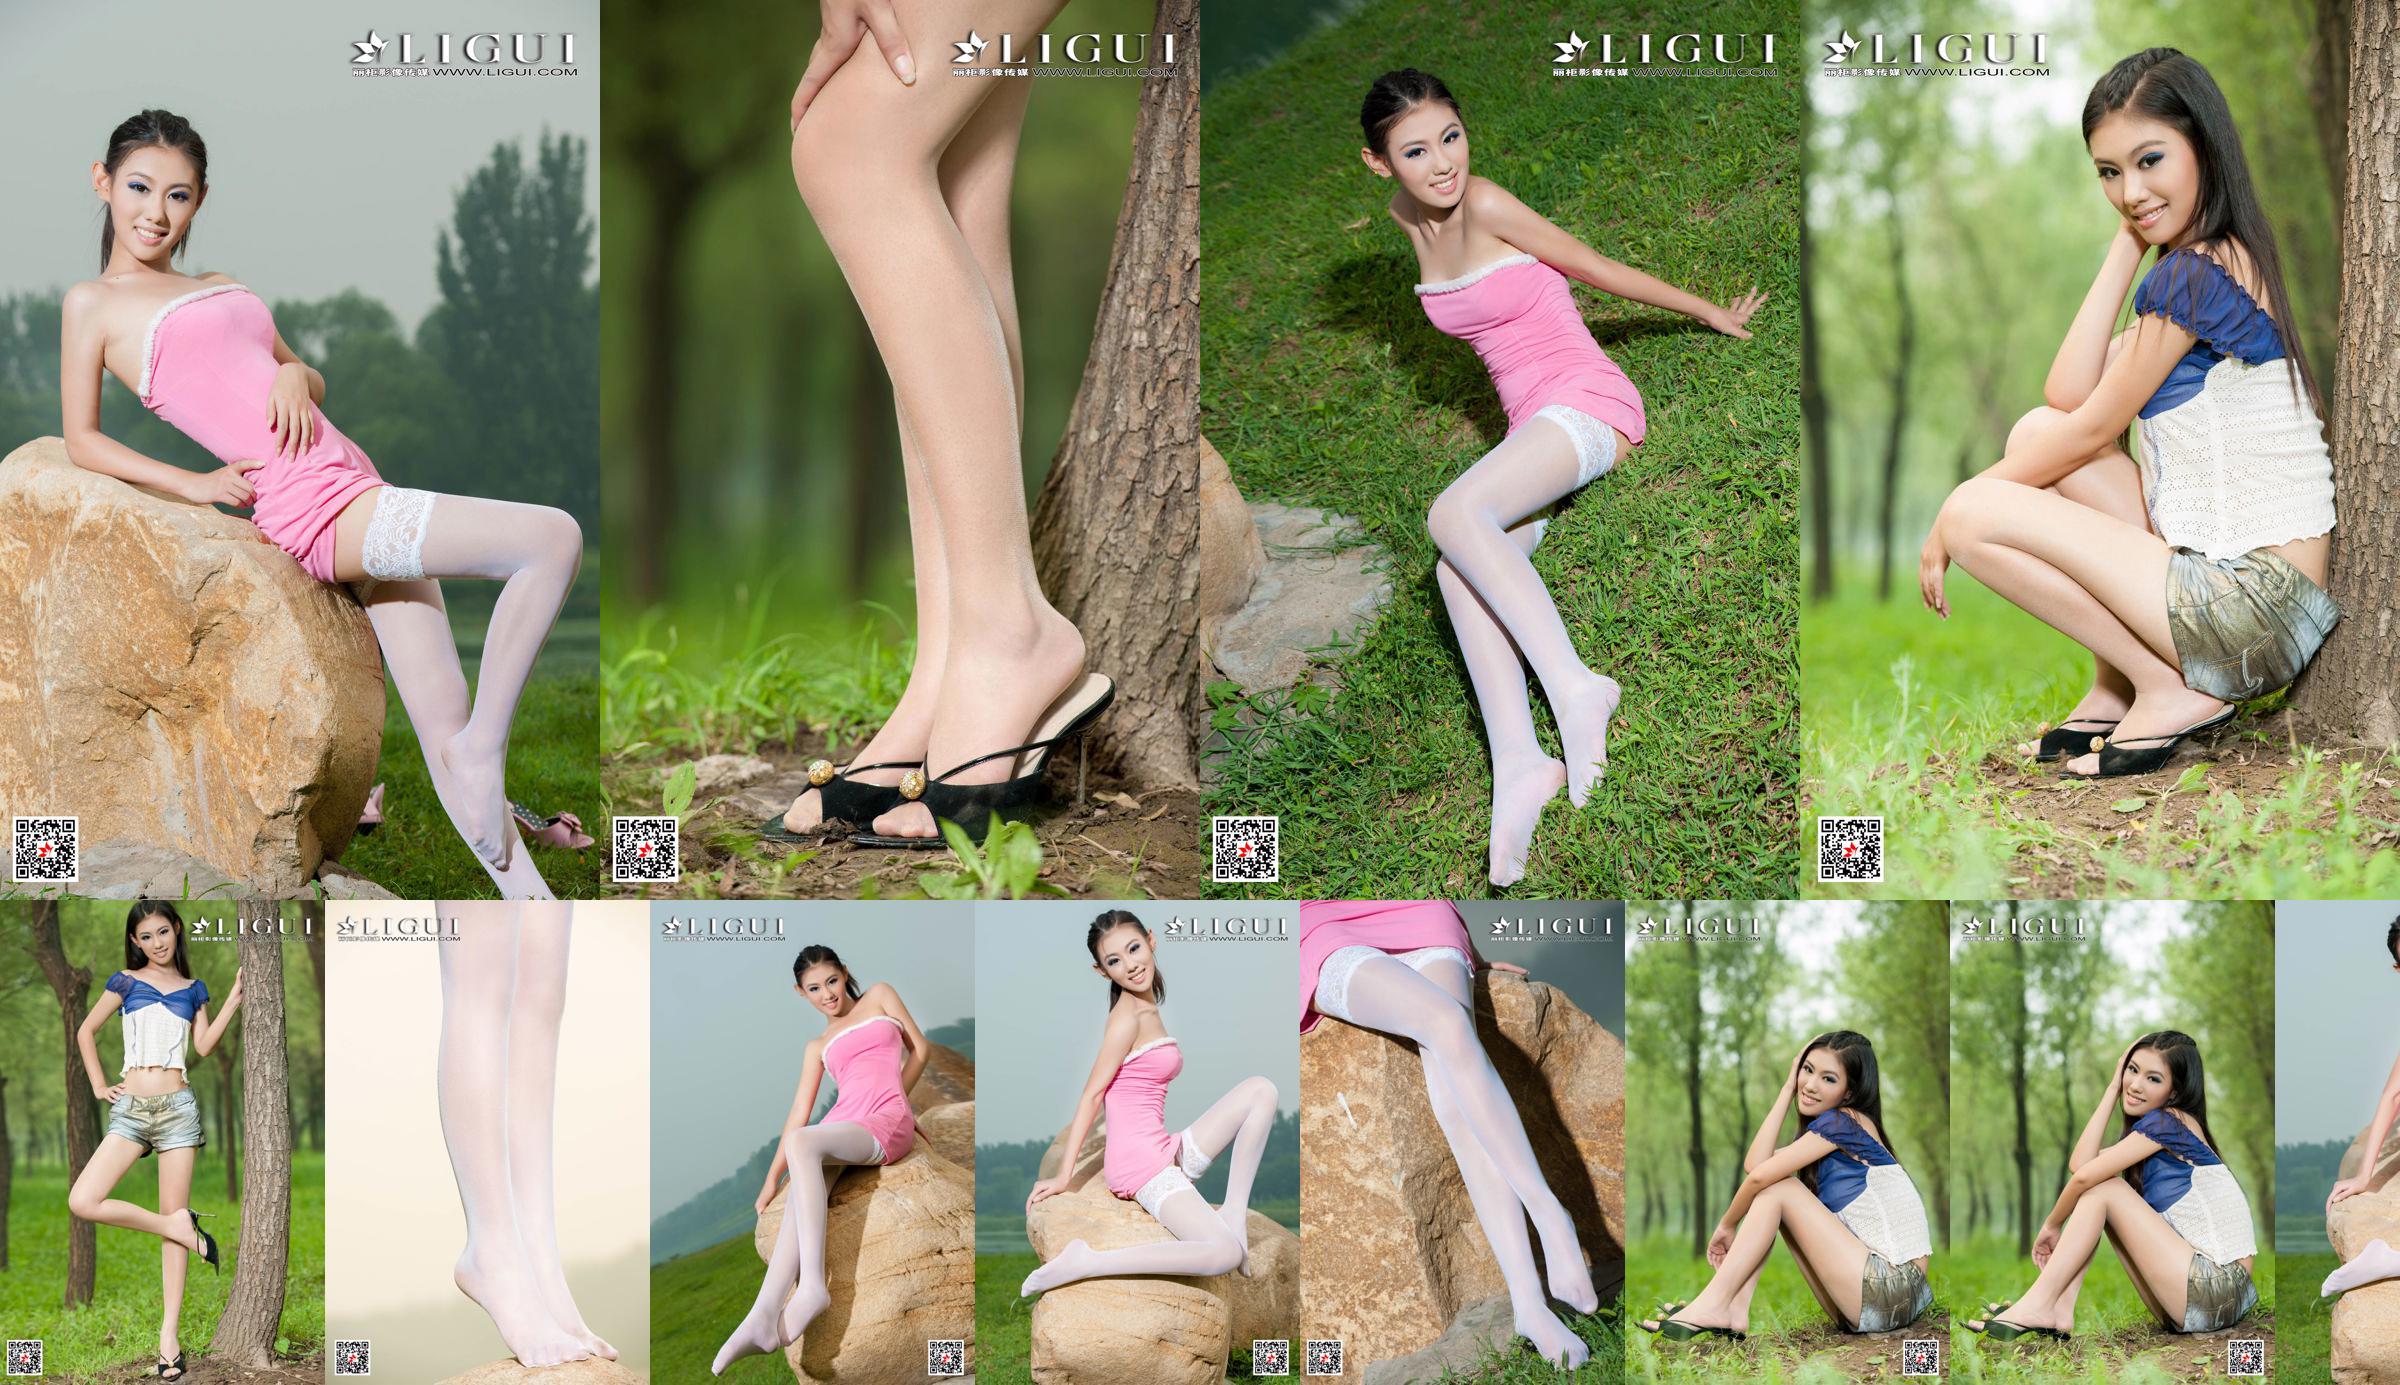 [丽 柜 Ligui] Model Wei Ling "Long Leg Girl" Mooie benen No.b1ff01 Pagina 1